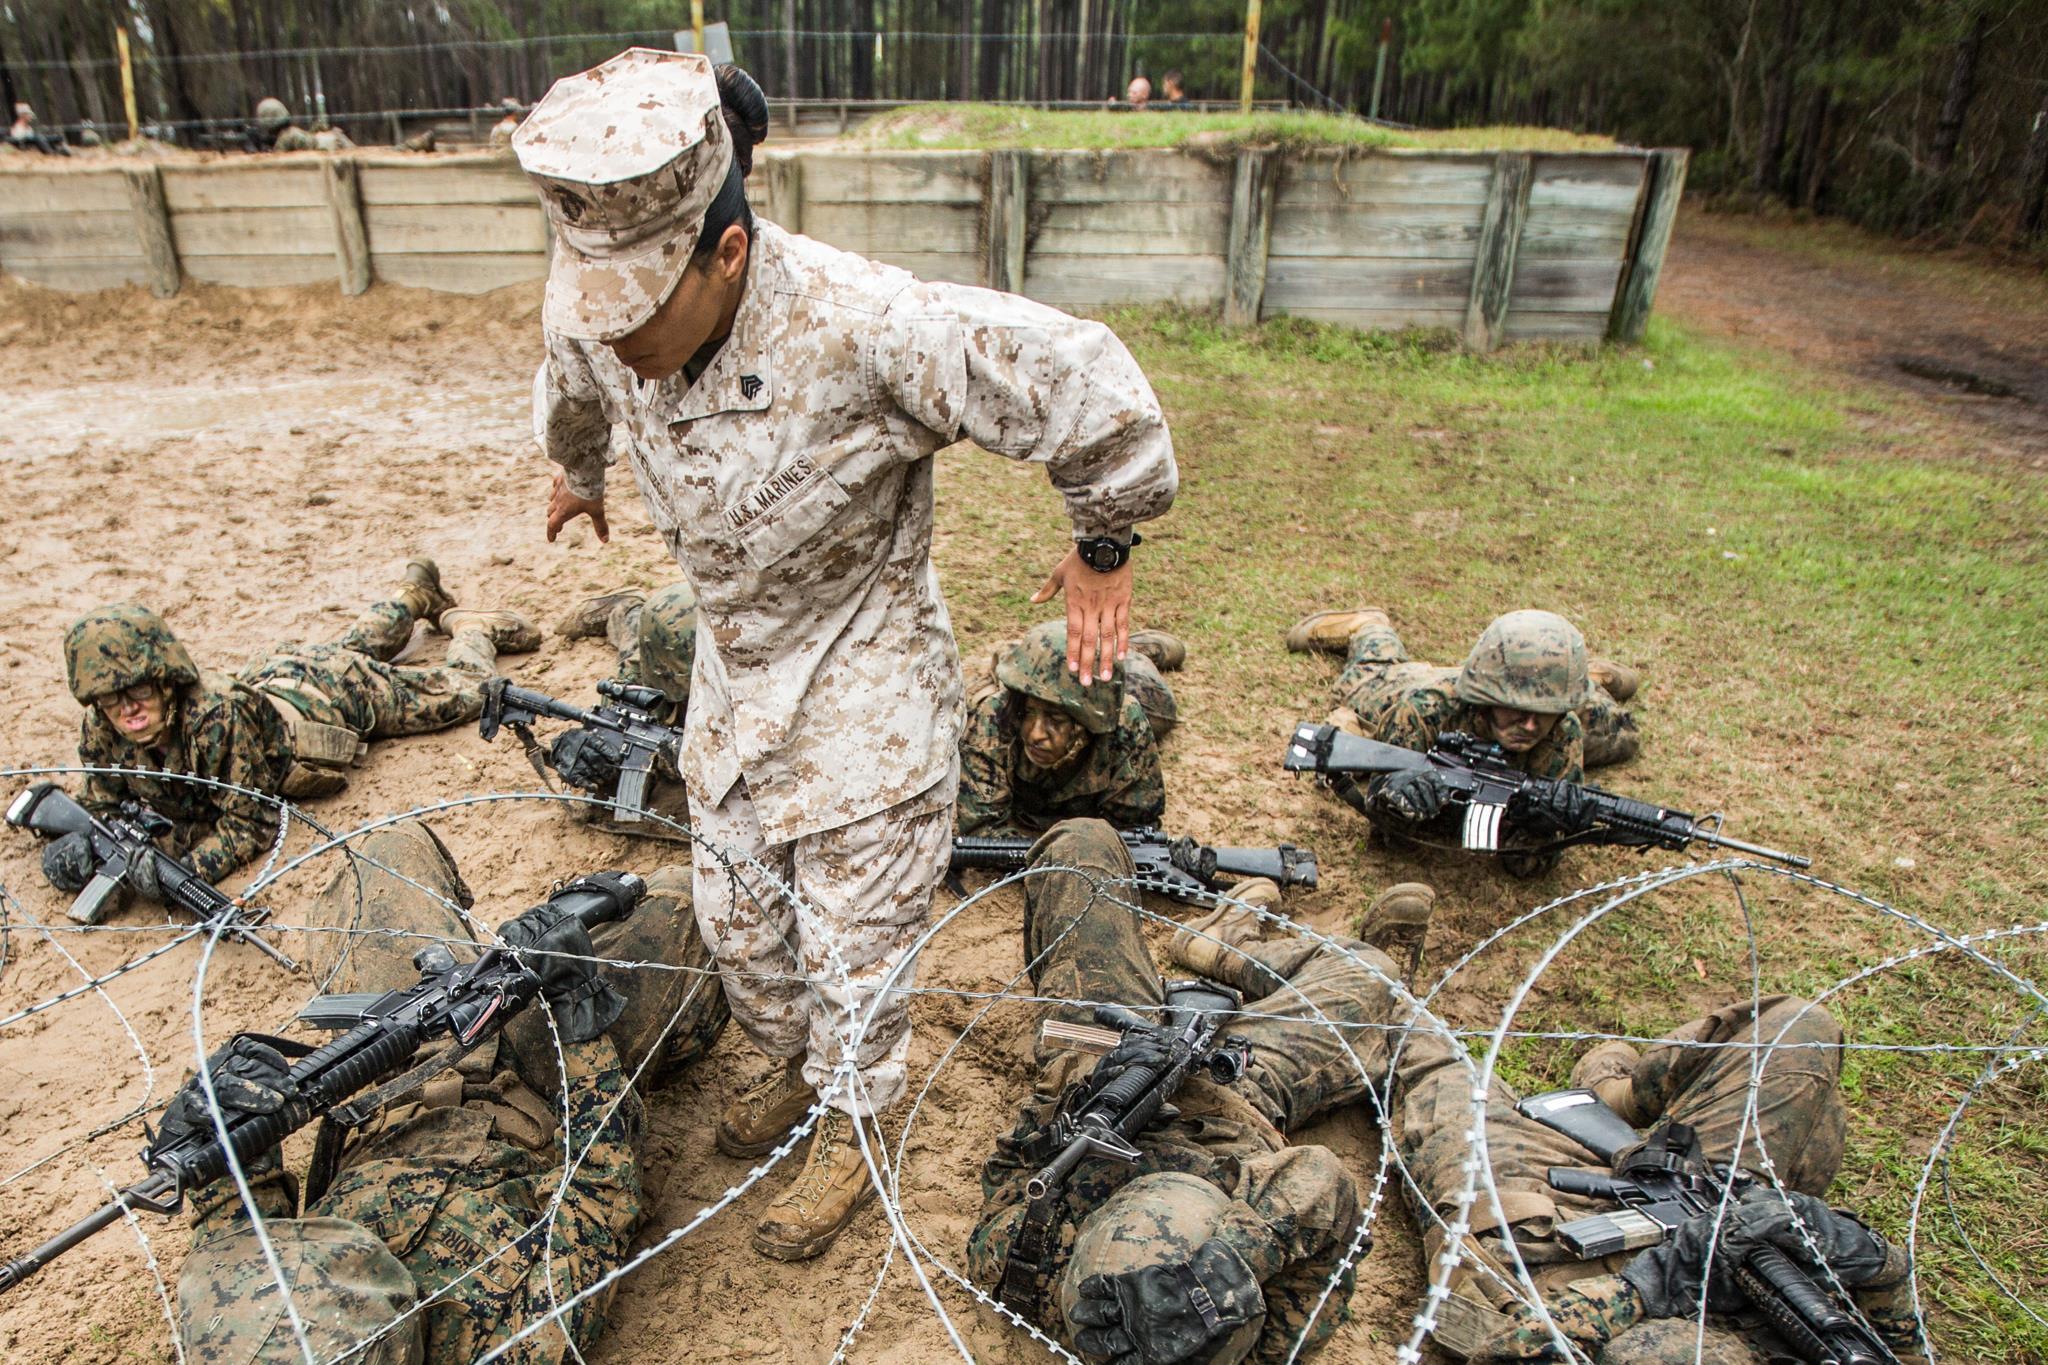 Marine Corps Basic Training